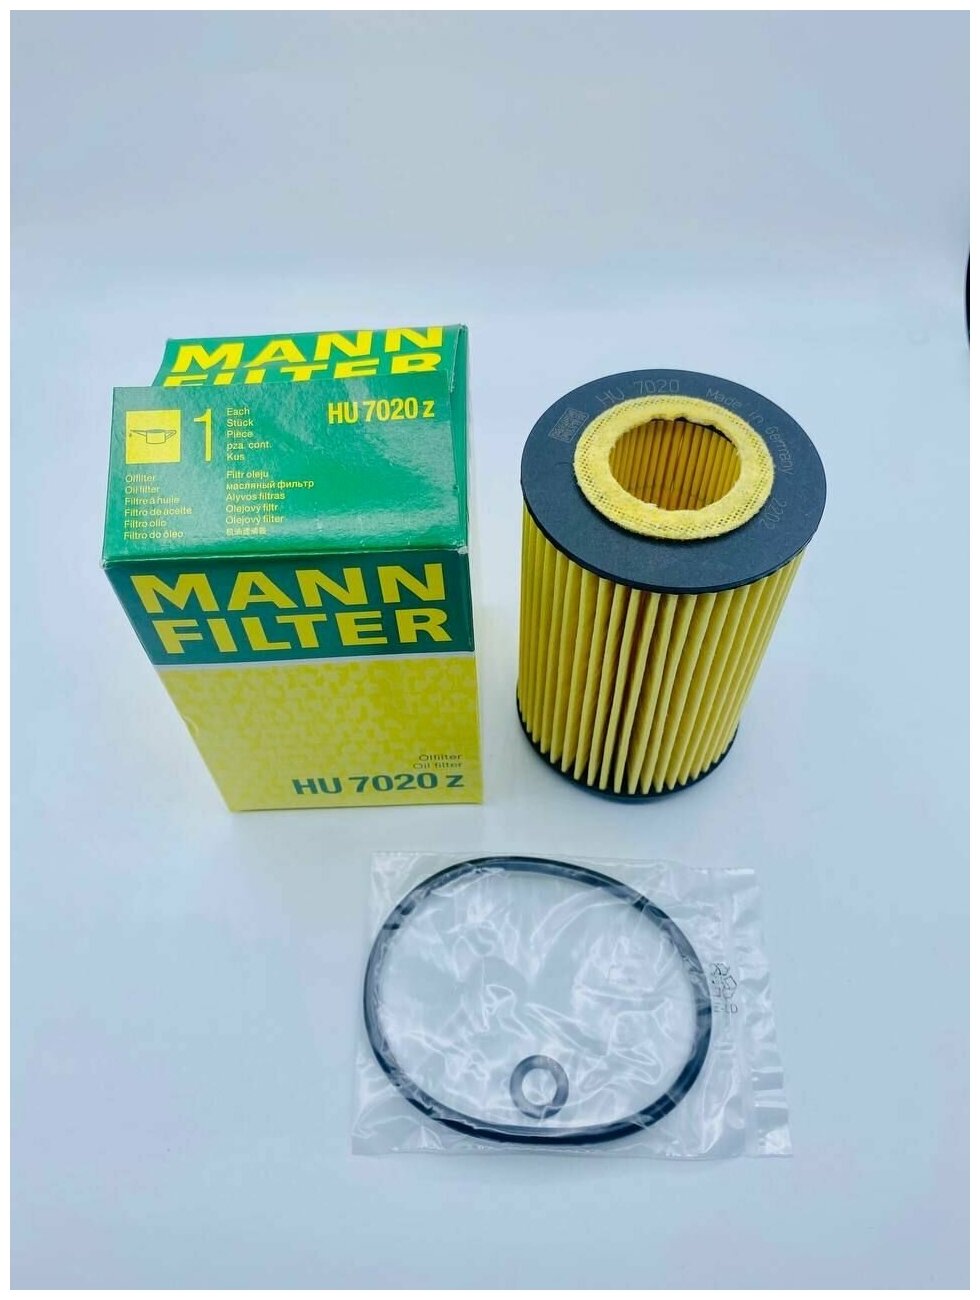 Olejový filtr MANN-FILTER HU 7020 z